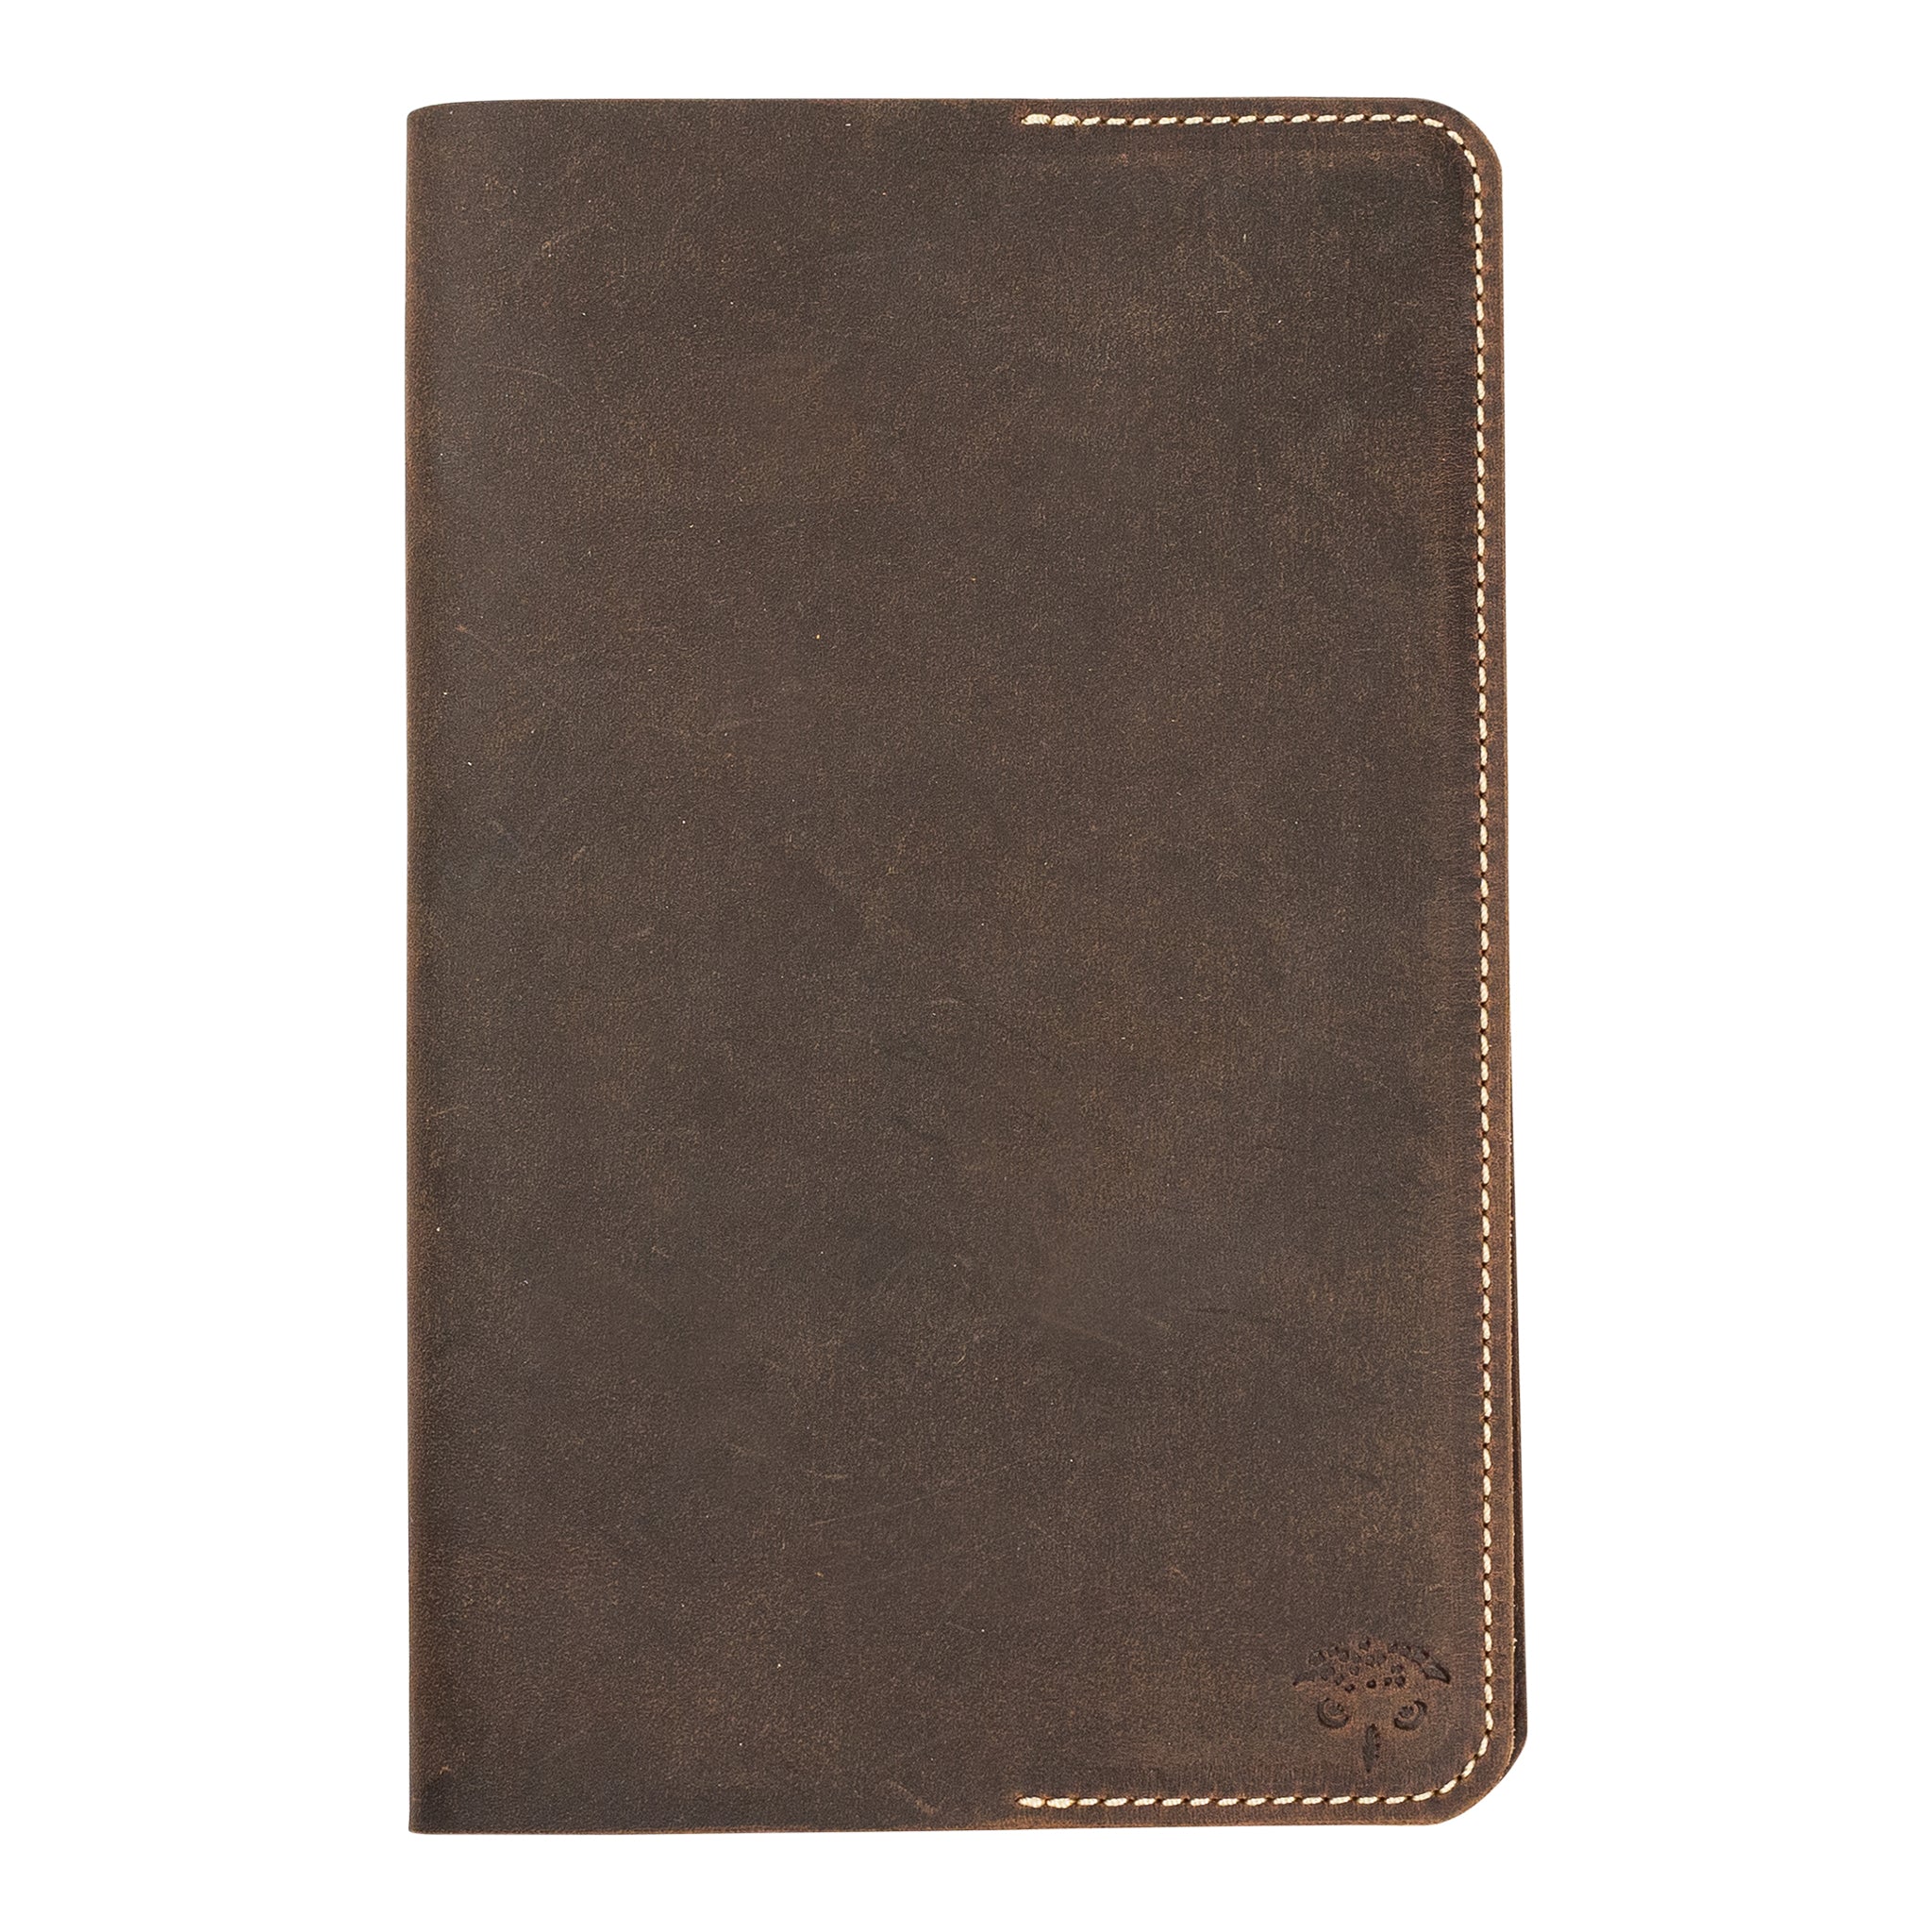 Field Notebook (Hemlock Brown)